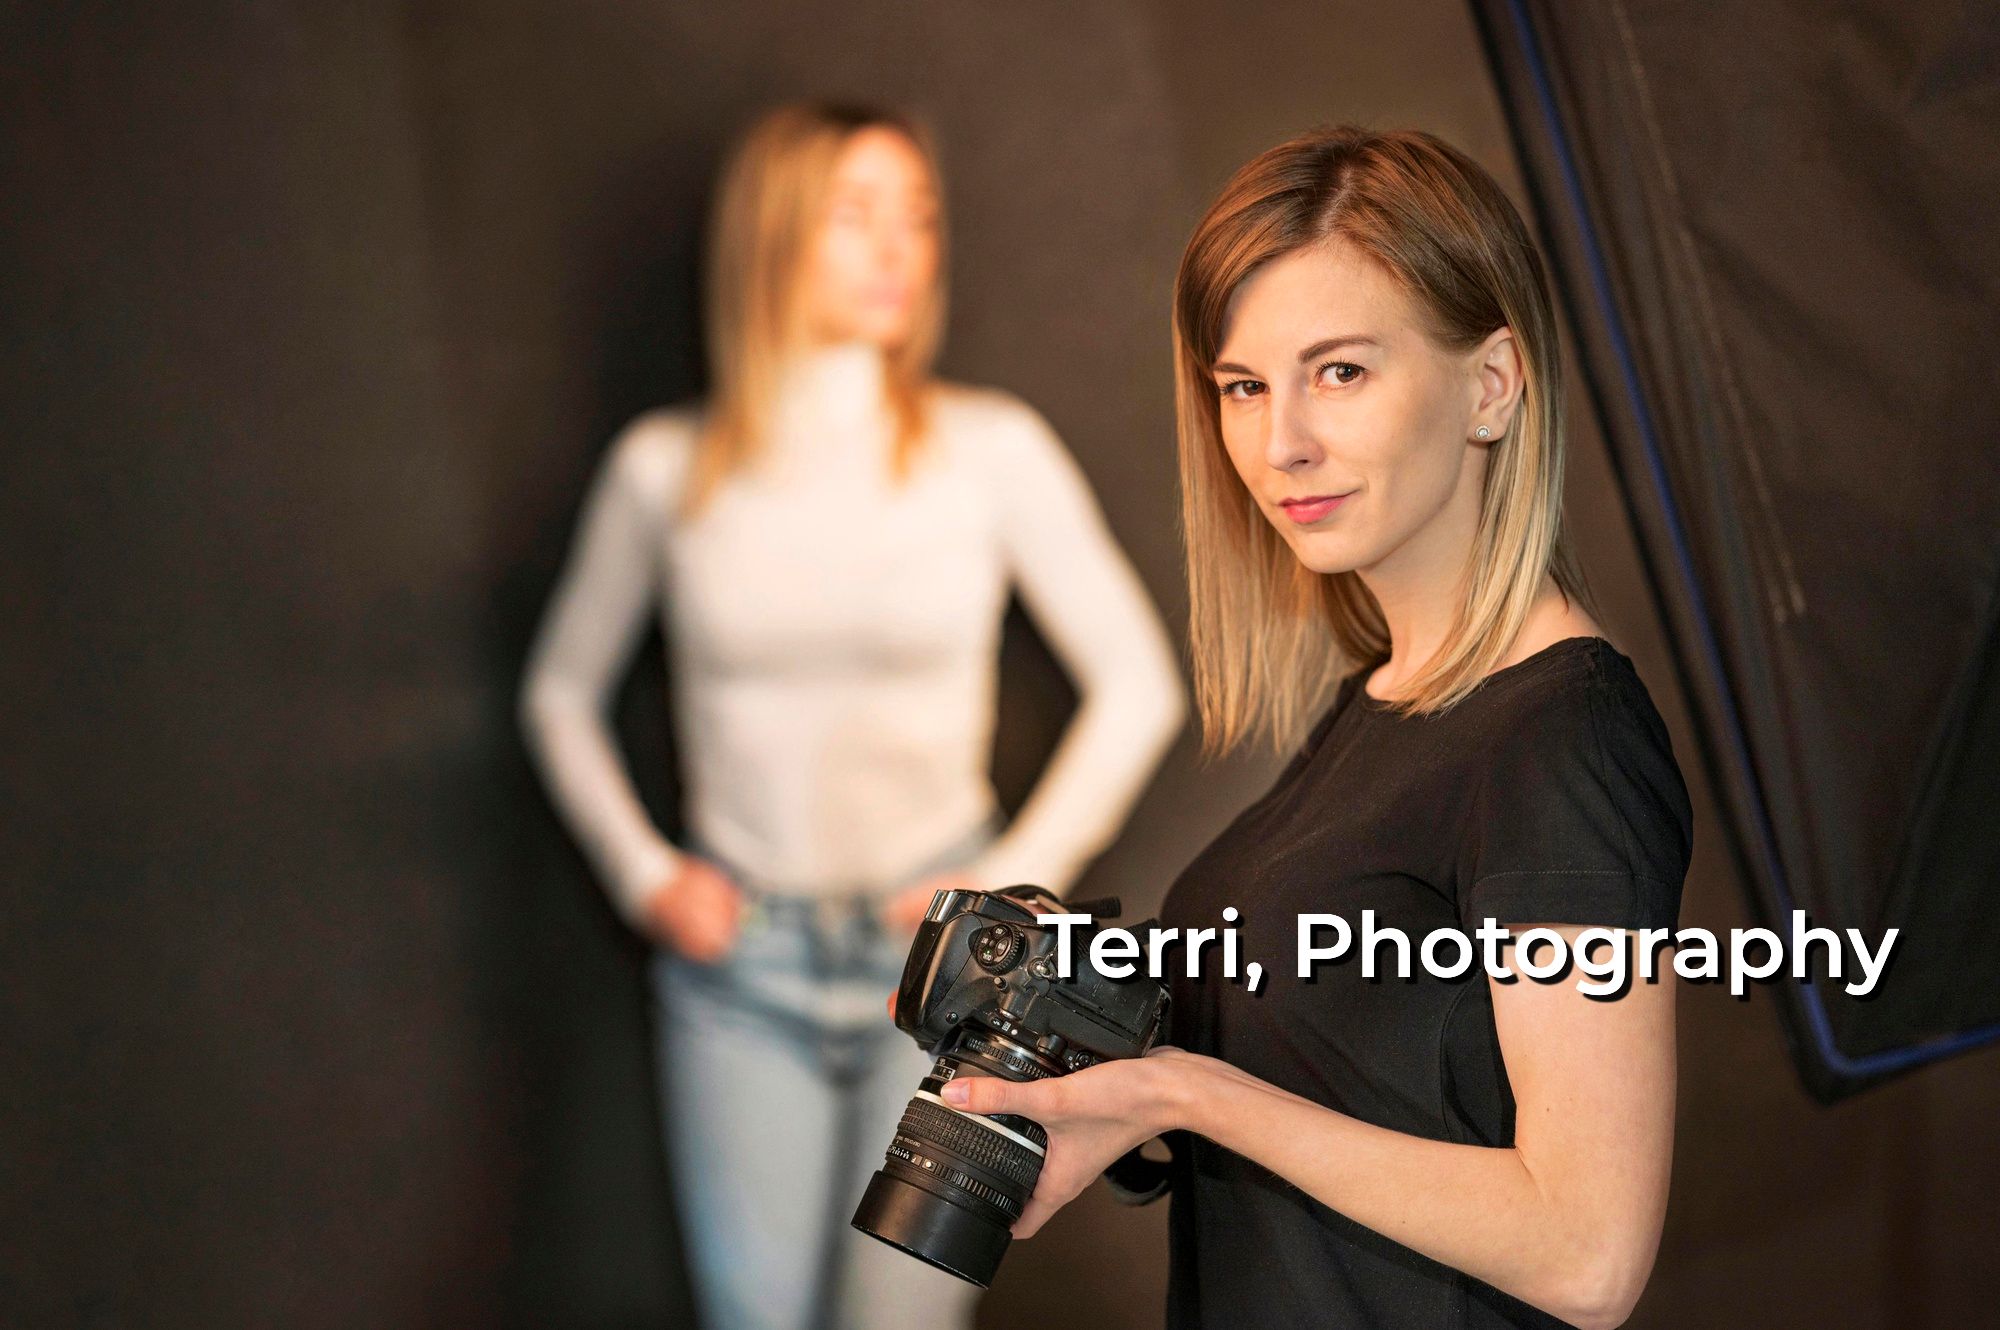 Terri, Photography